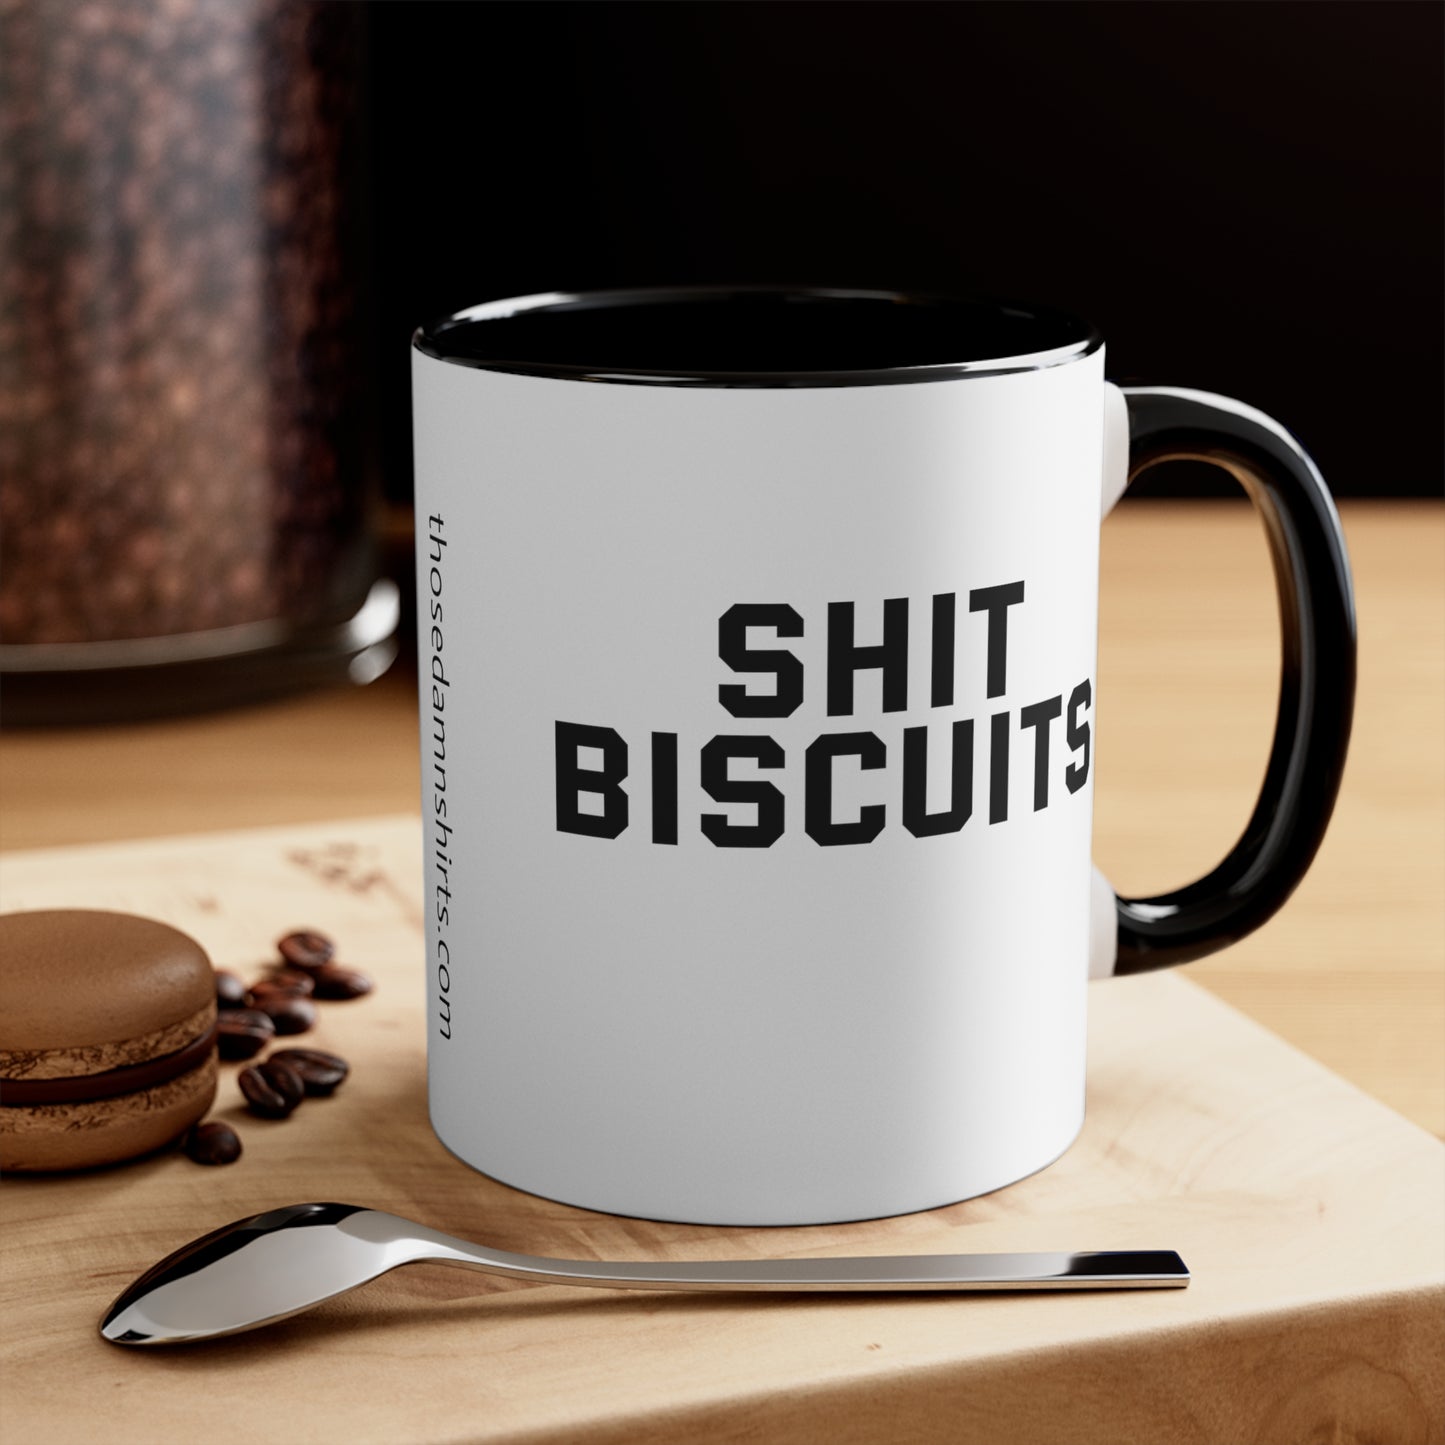 Shit Biscuits Mug, 11oz